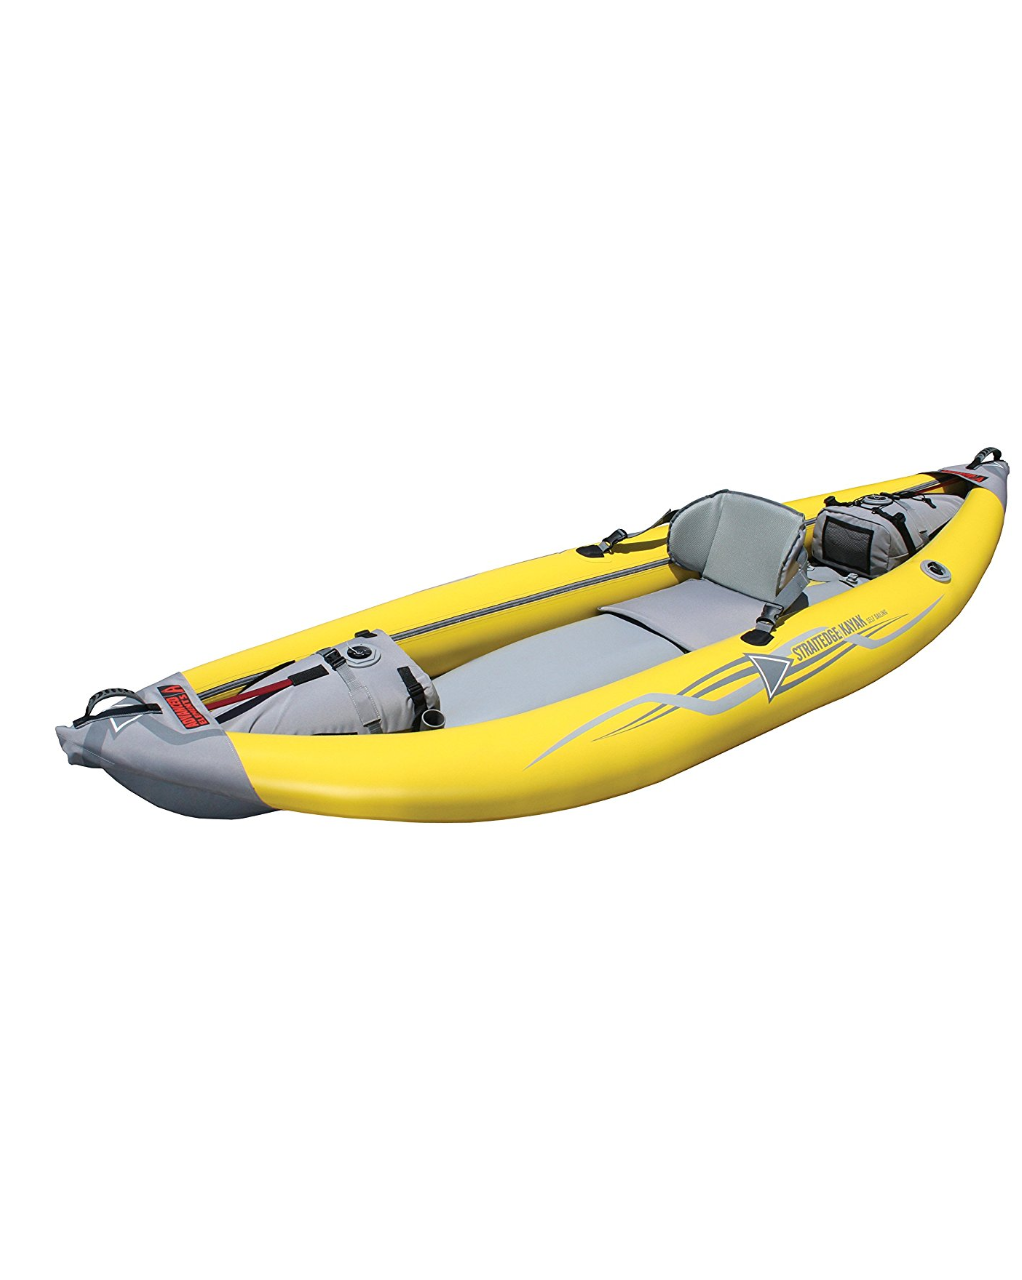 Straightedge kayak